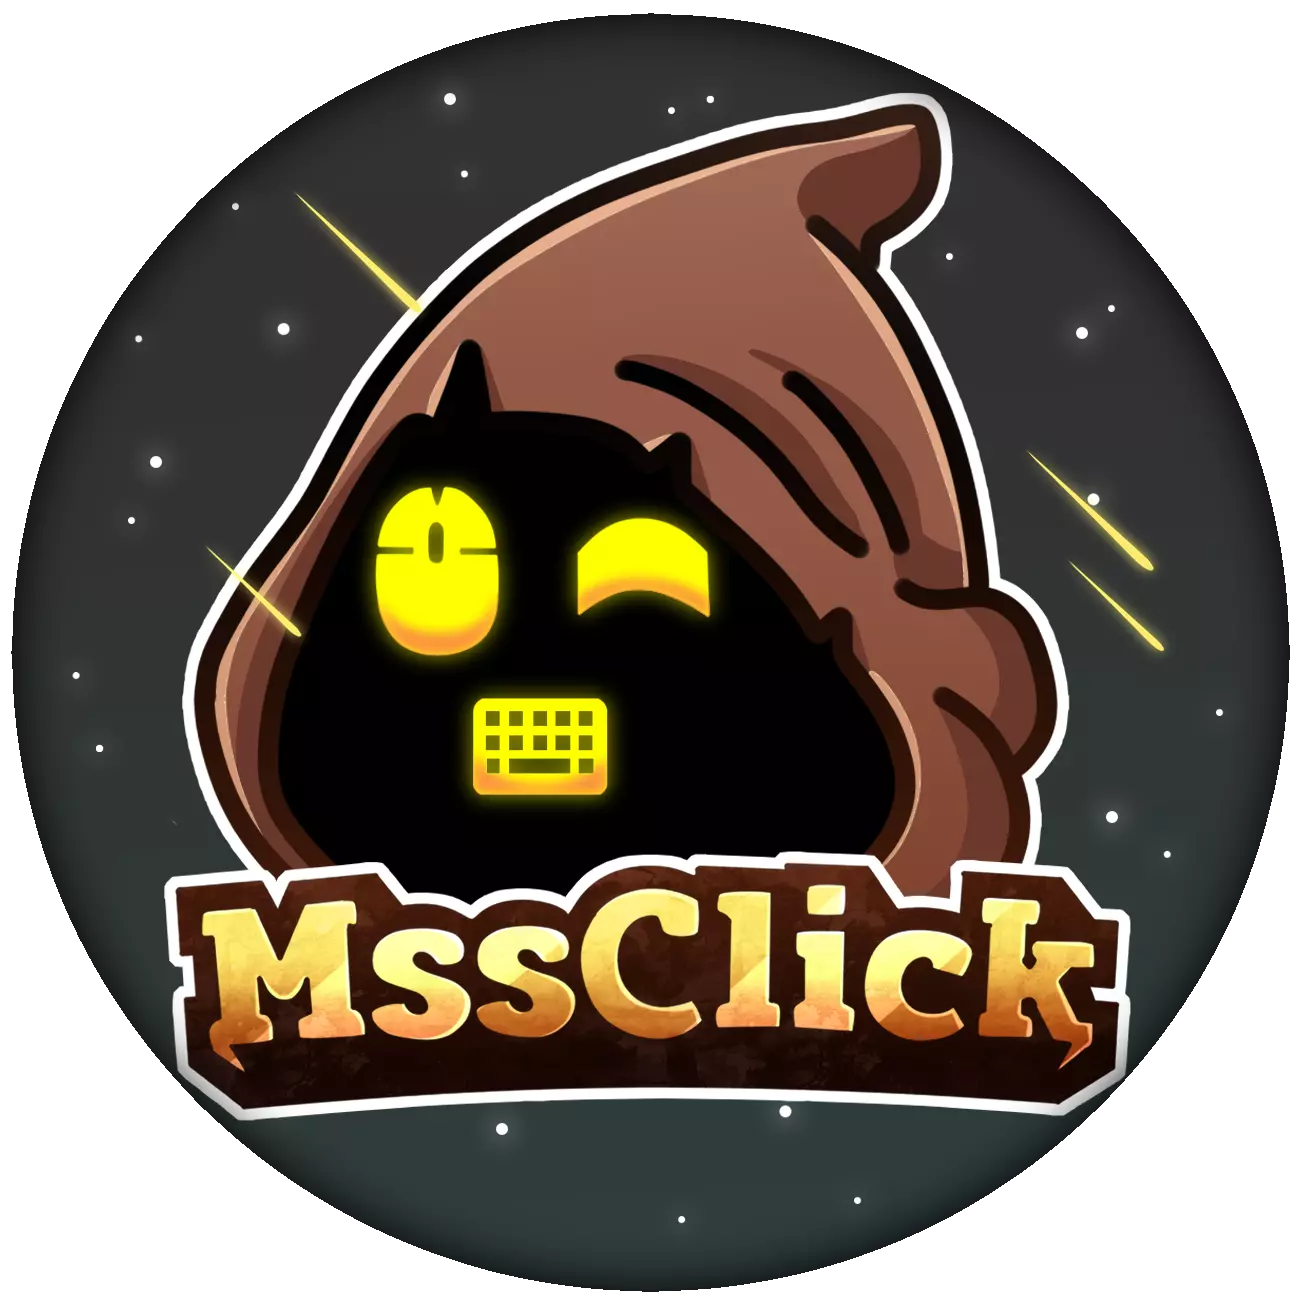 mssclick